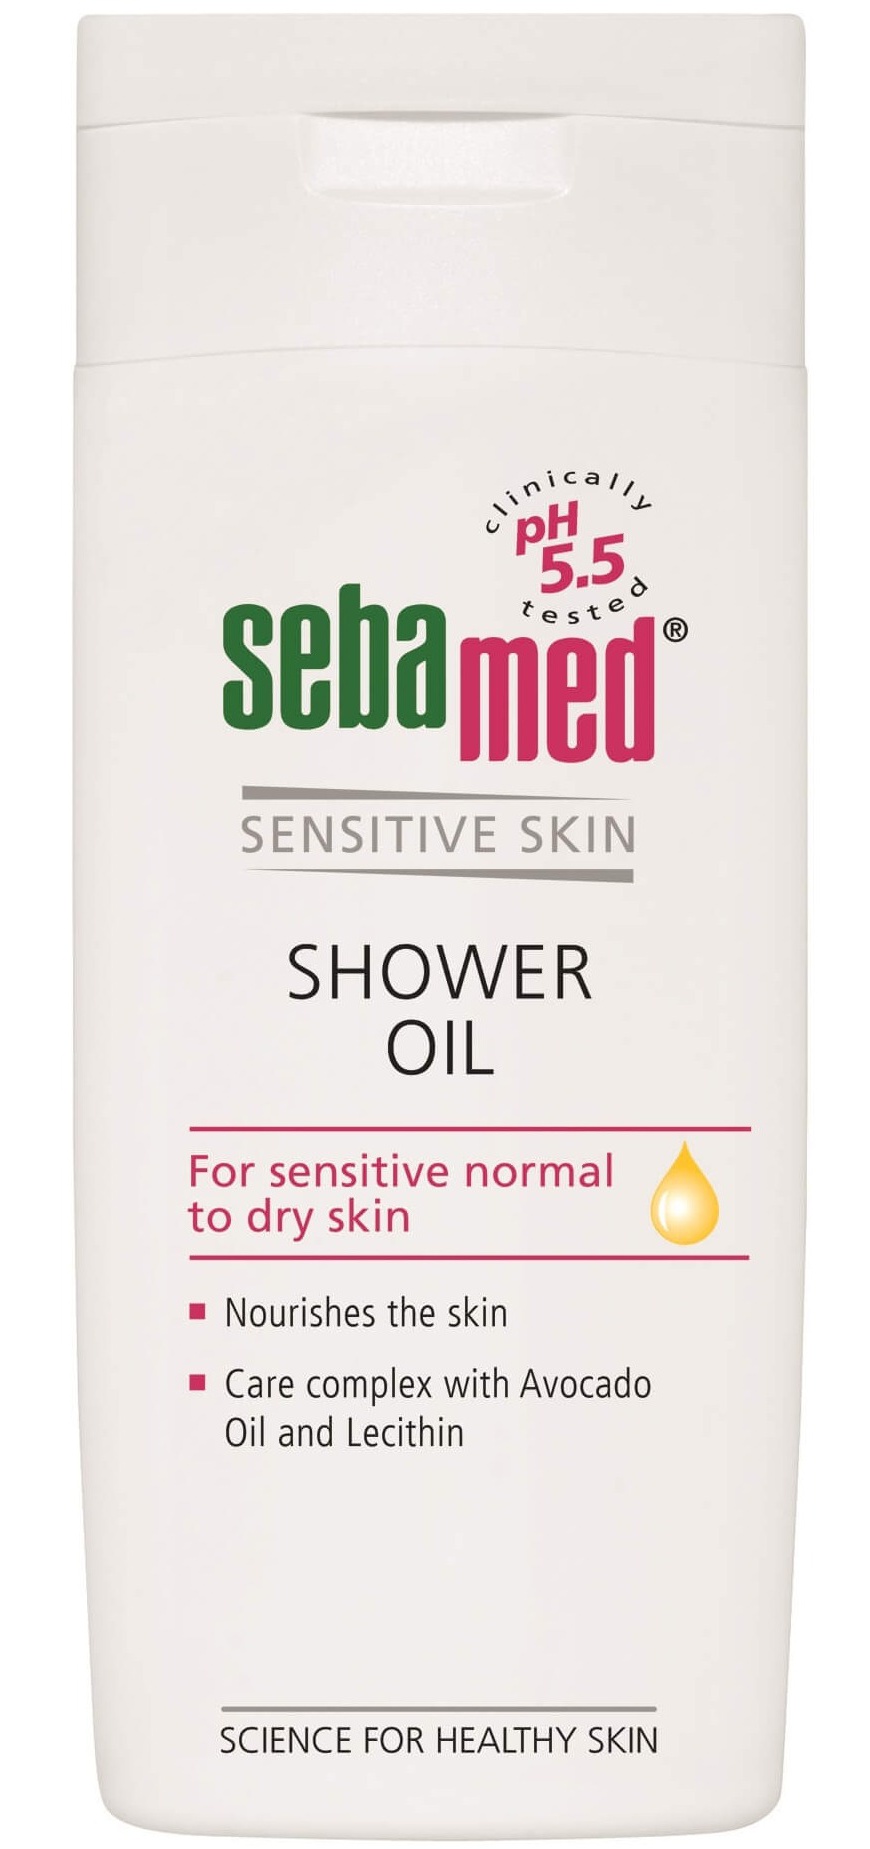 Sebamed Shower Oil